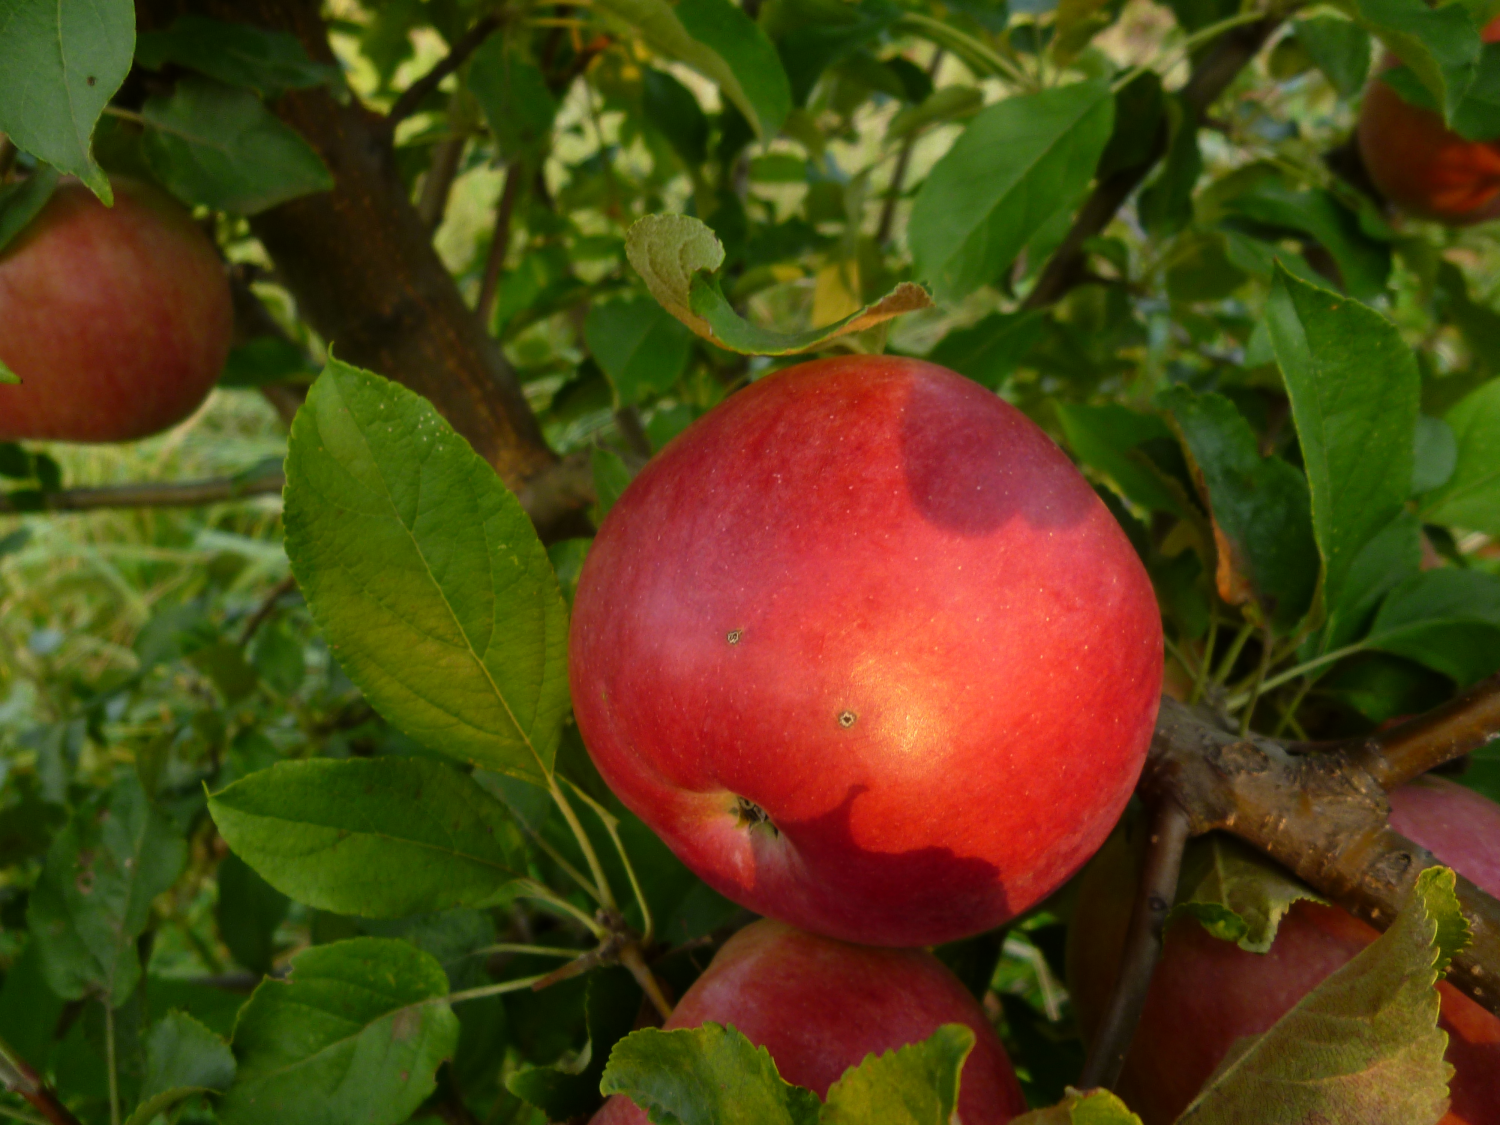 Яблоня вкусного высокоурожайного сорта айдаред